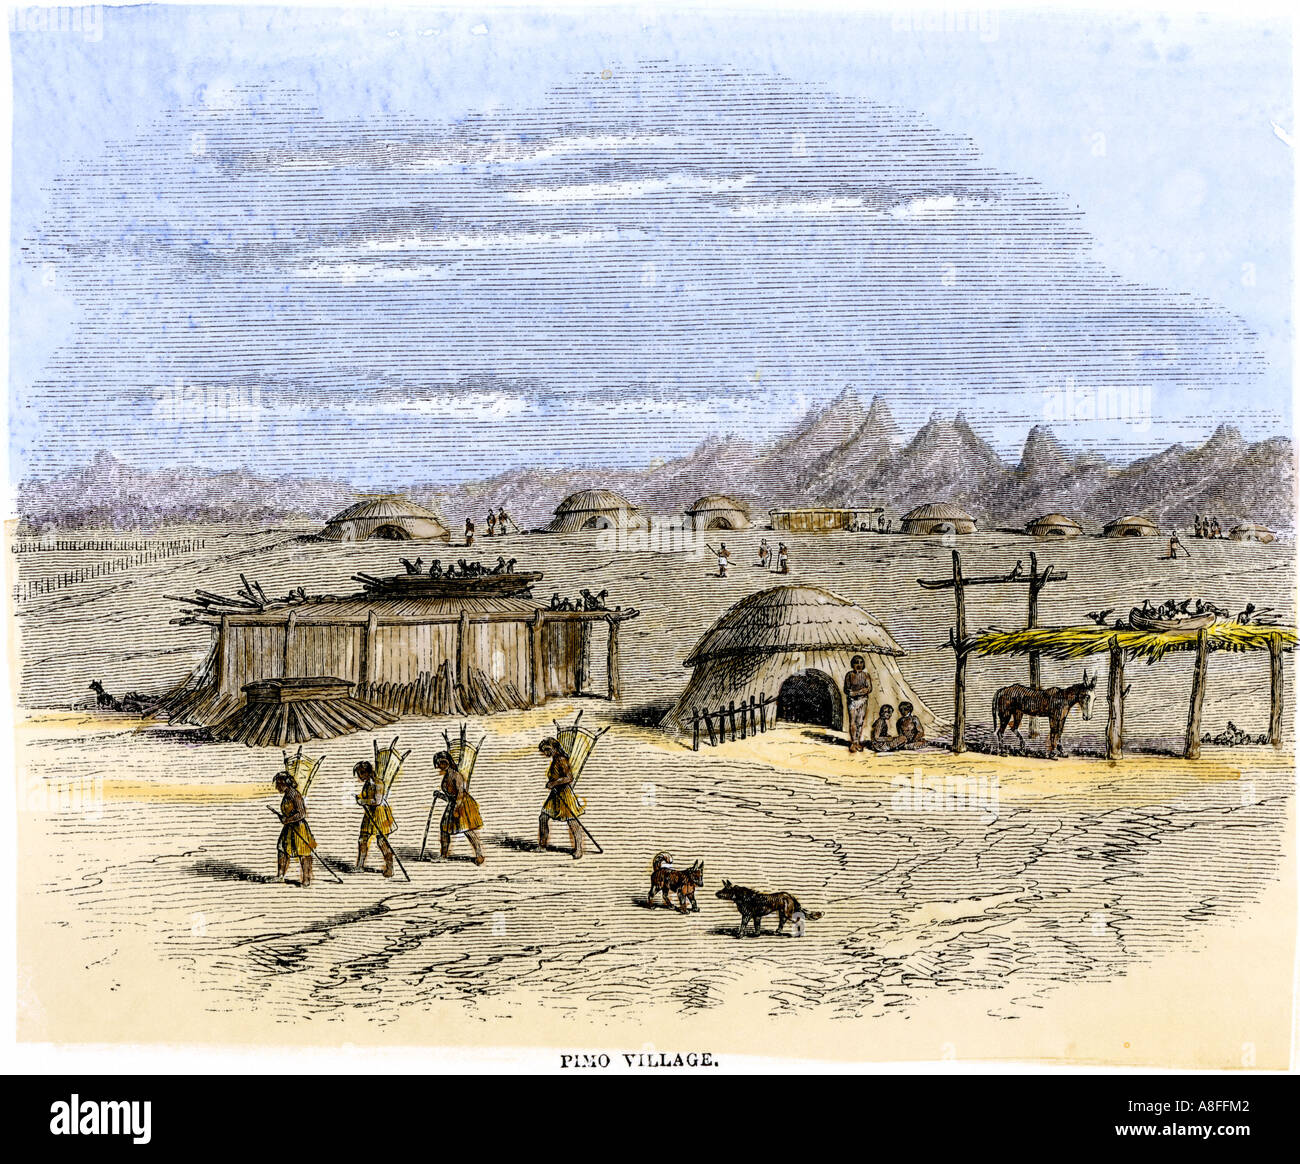 Piman village indien dans le sud-ouest du désert des années 1800. À la main, gravure sur bois Banque D'Images